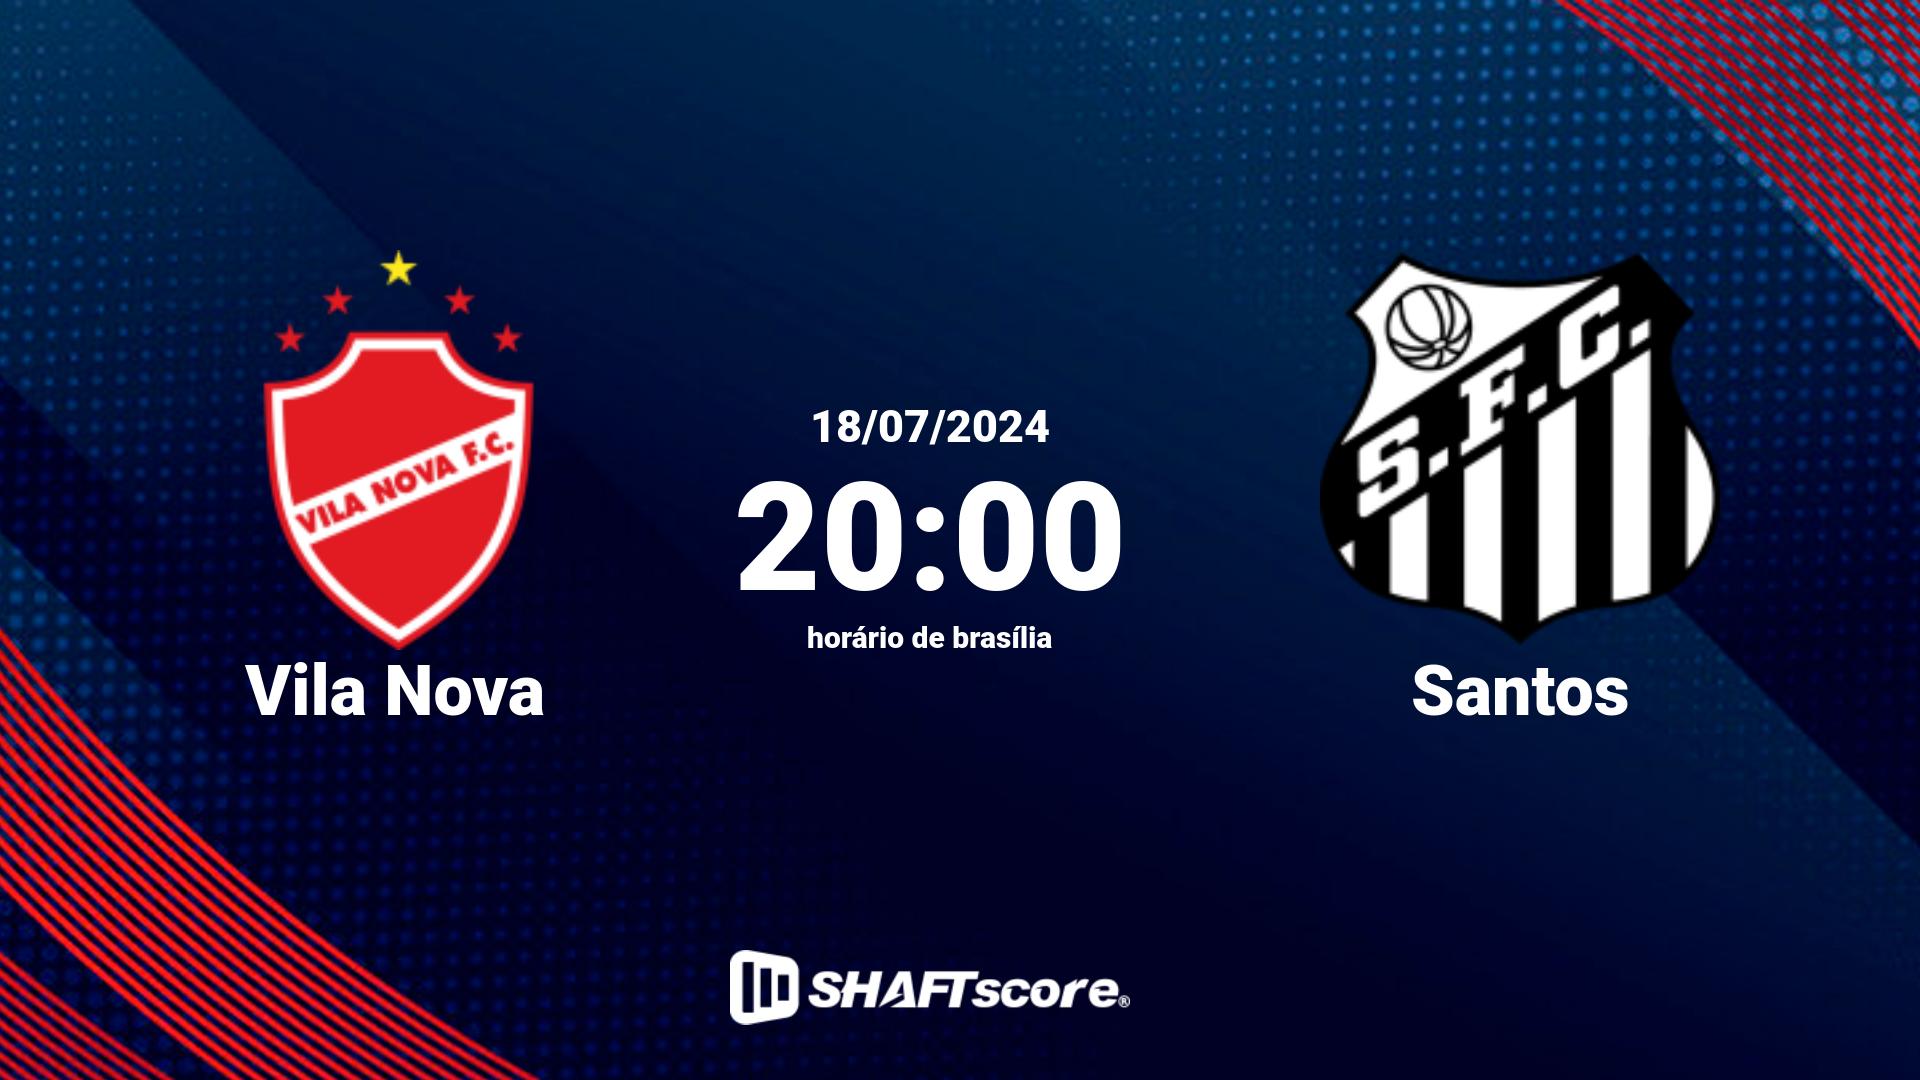 Estatísticas do jogo Vila Nova vs Santos 18.07 20:00